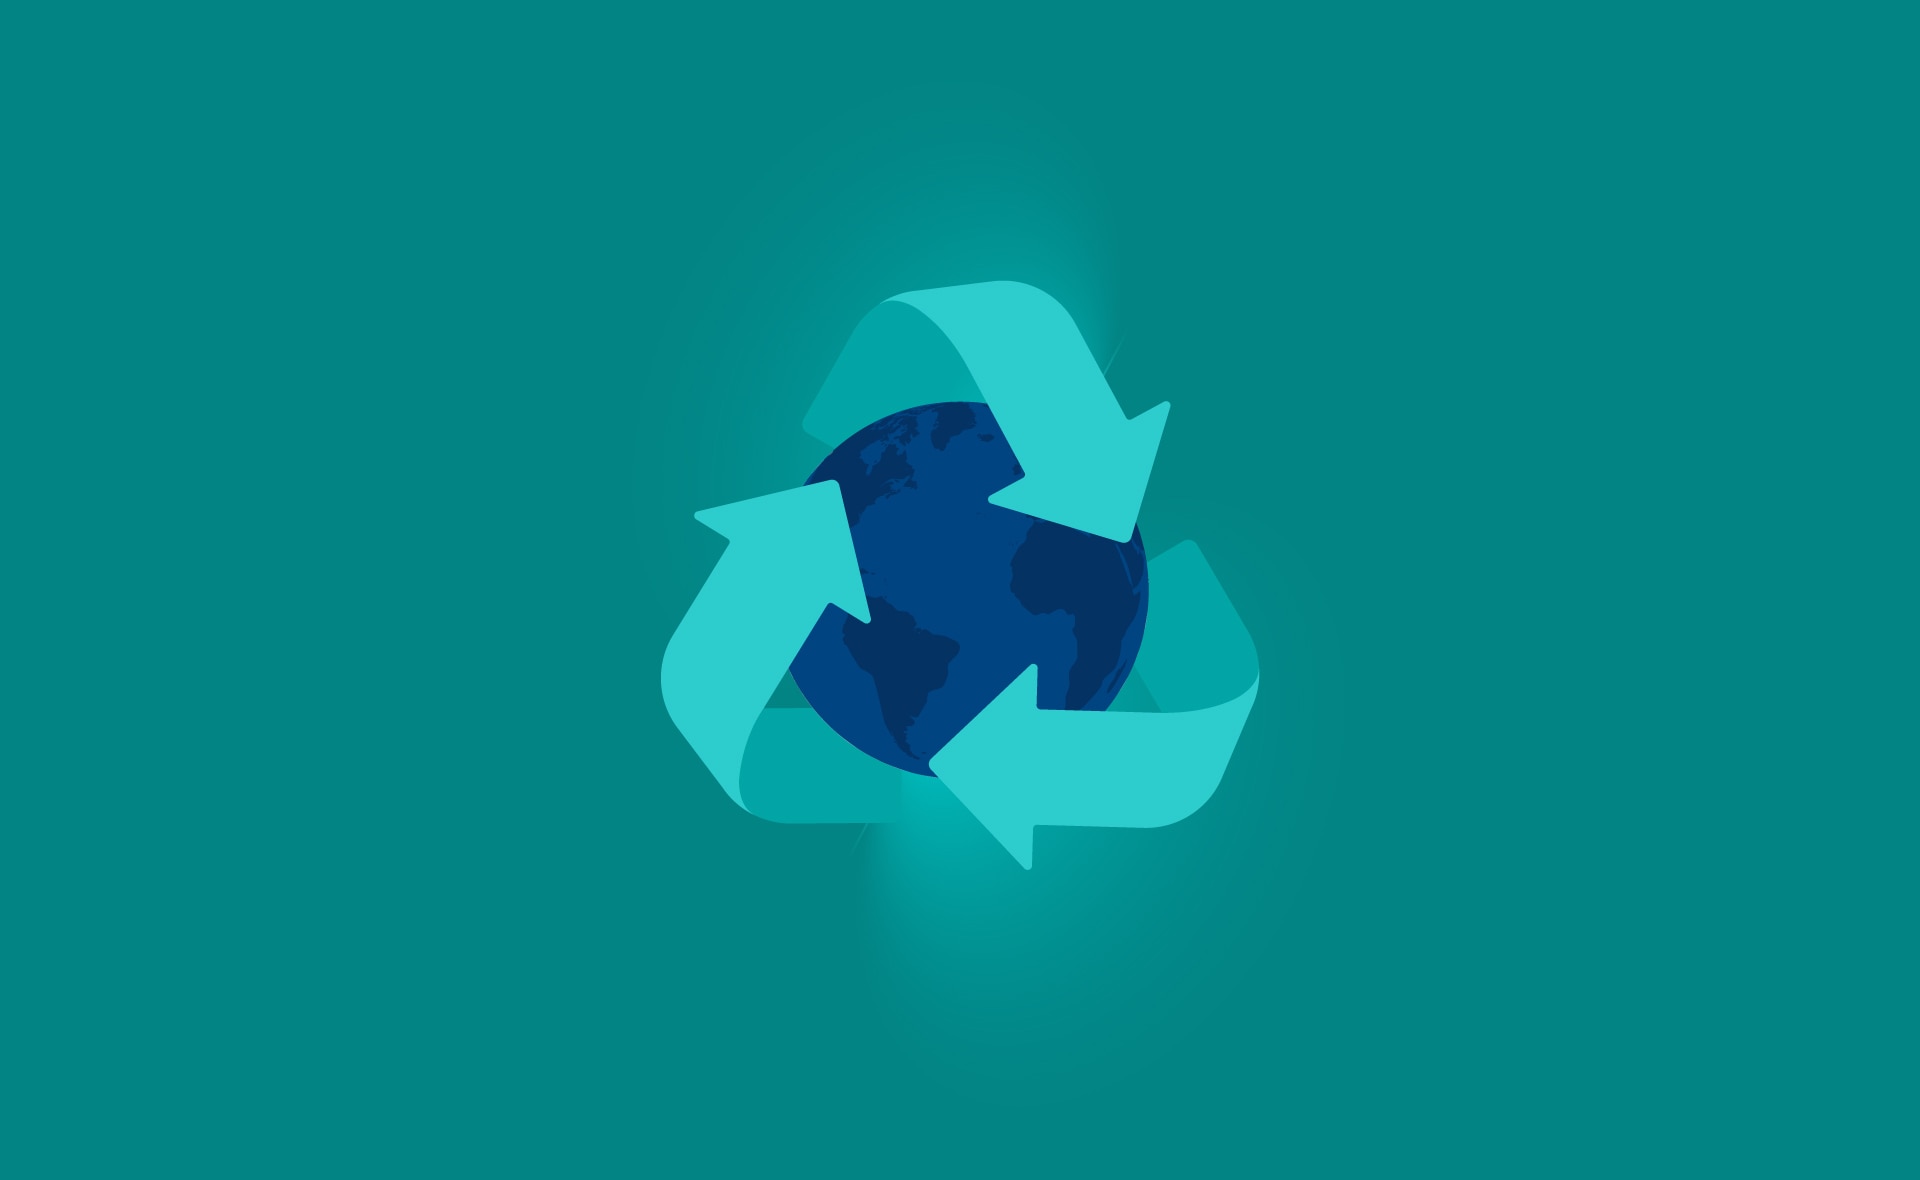 consumo_responsable-argentina-reciclaje-cuidado-redecorar-proteger-medioambiente-planeta